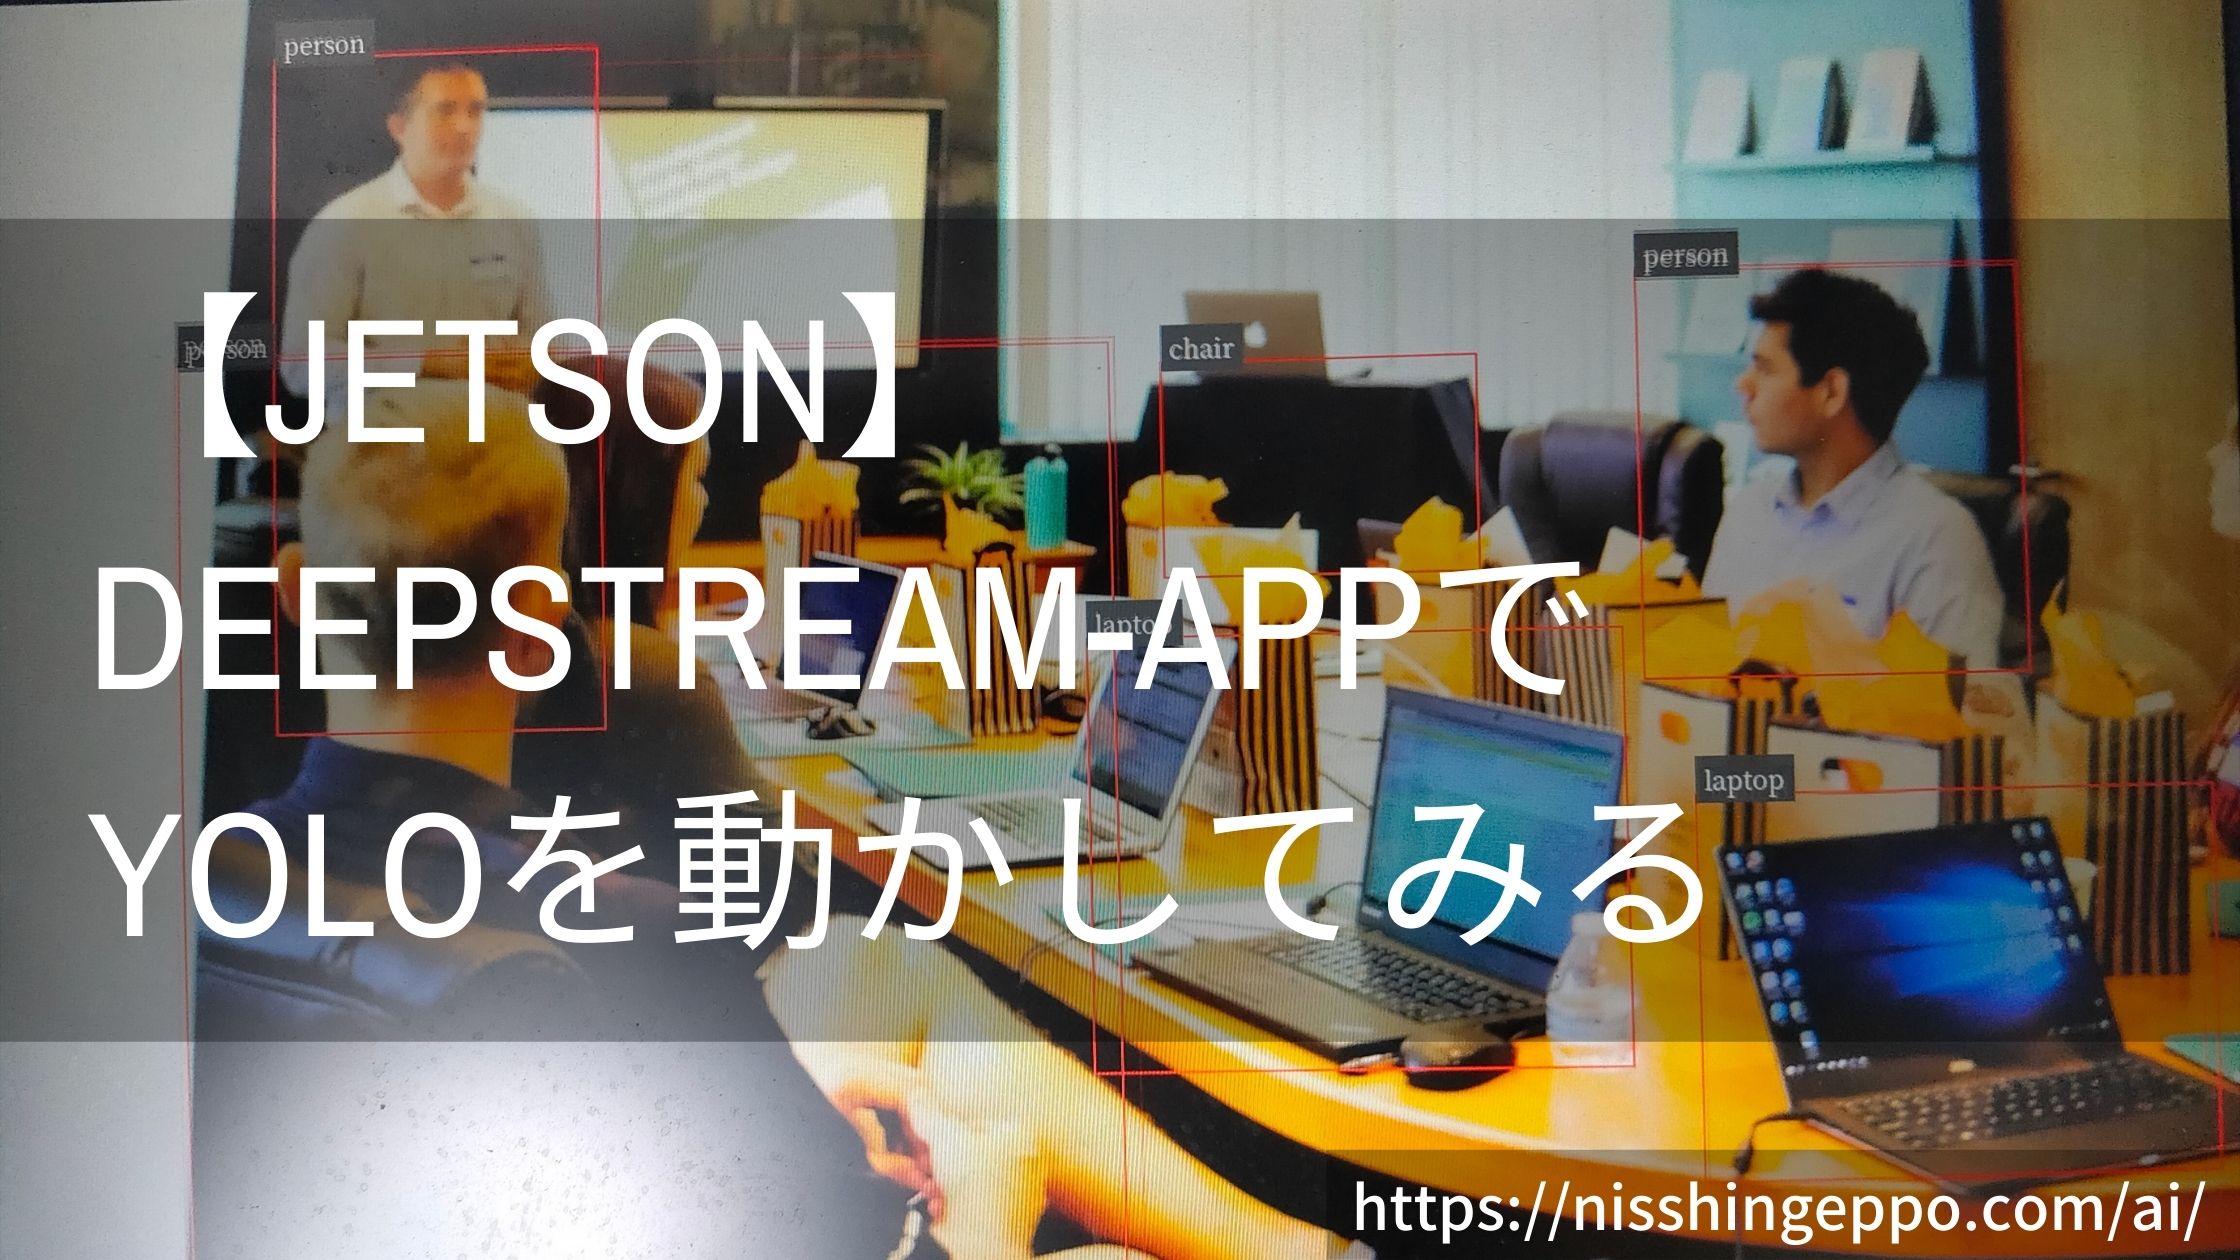 【jetson】deepstream-appでYoloを動かしてみる